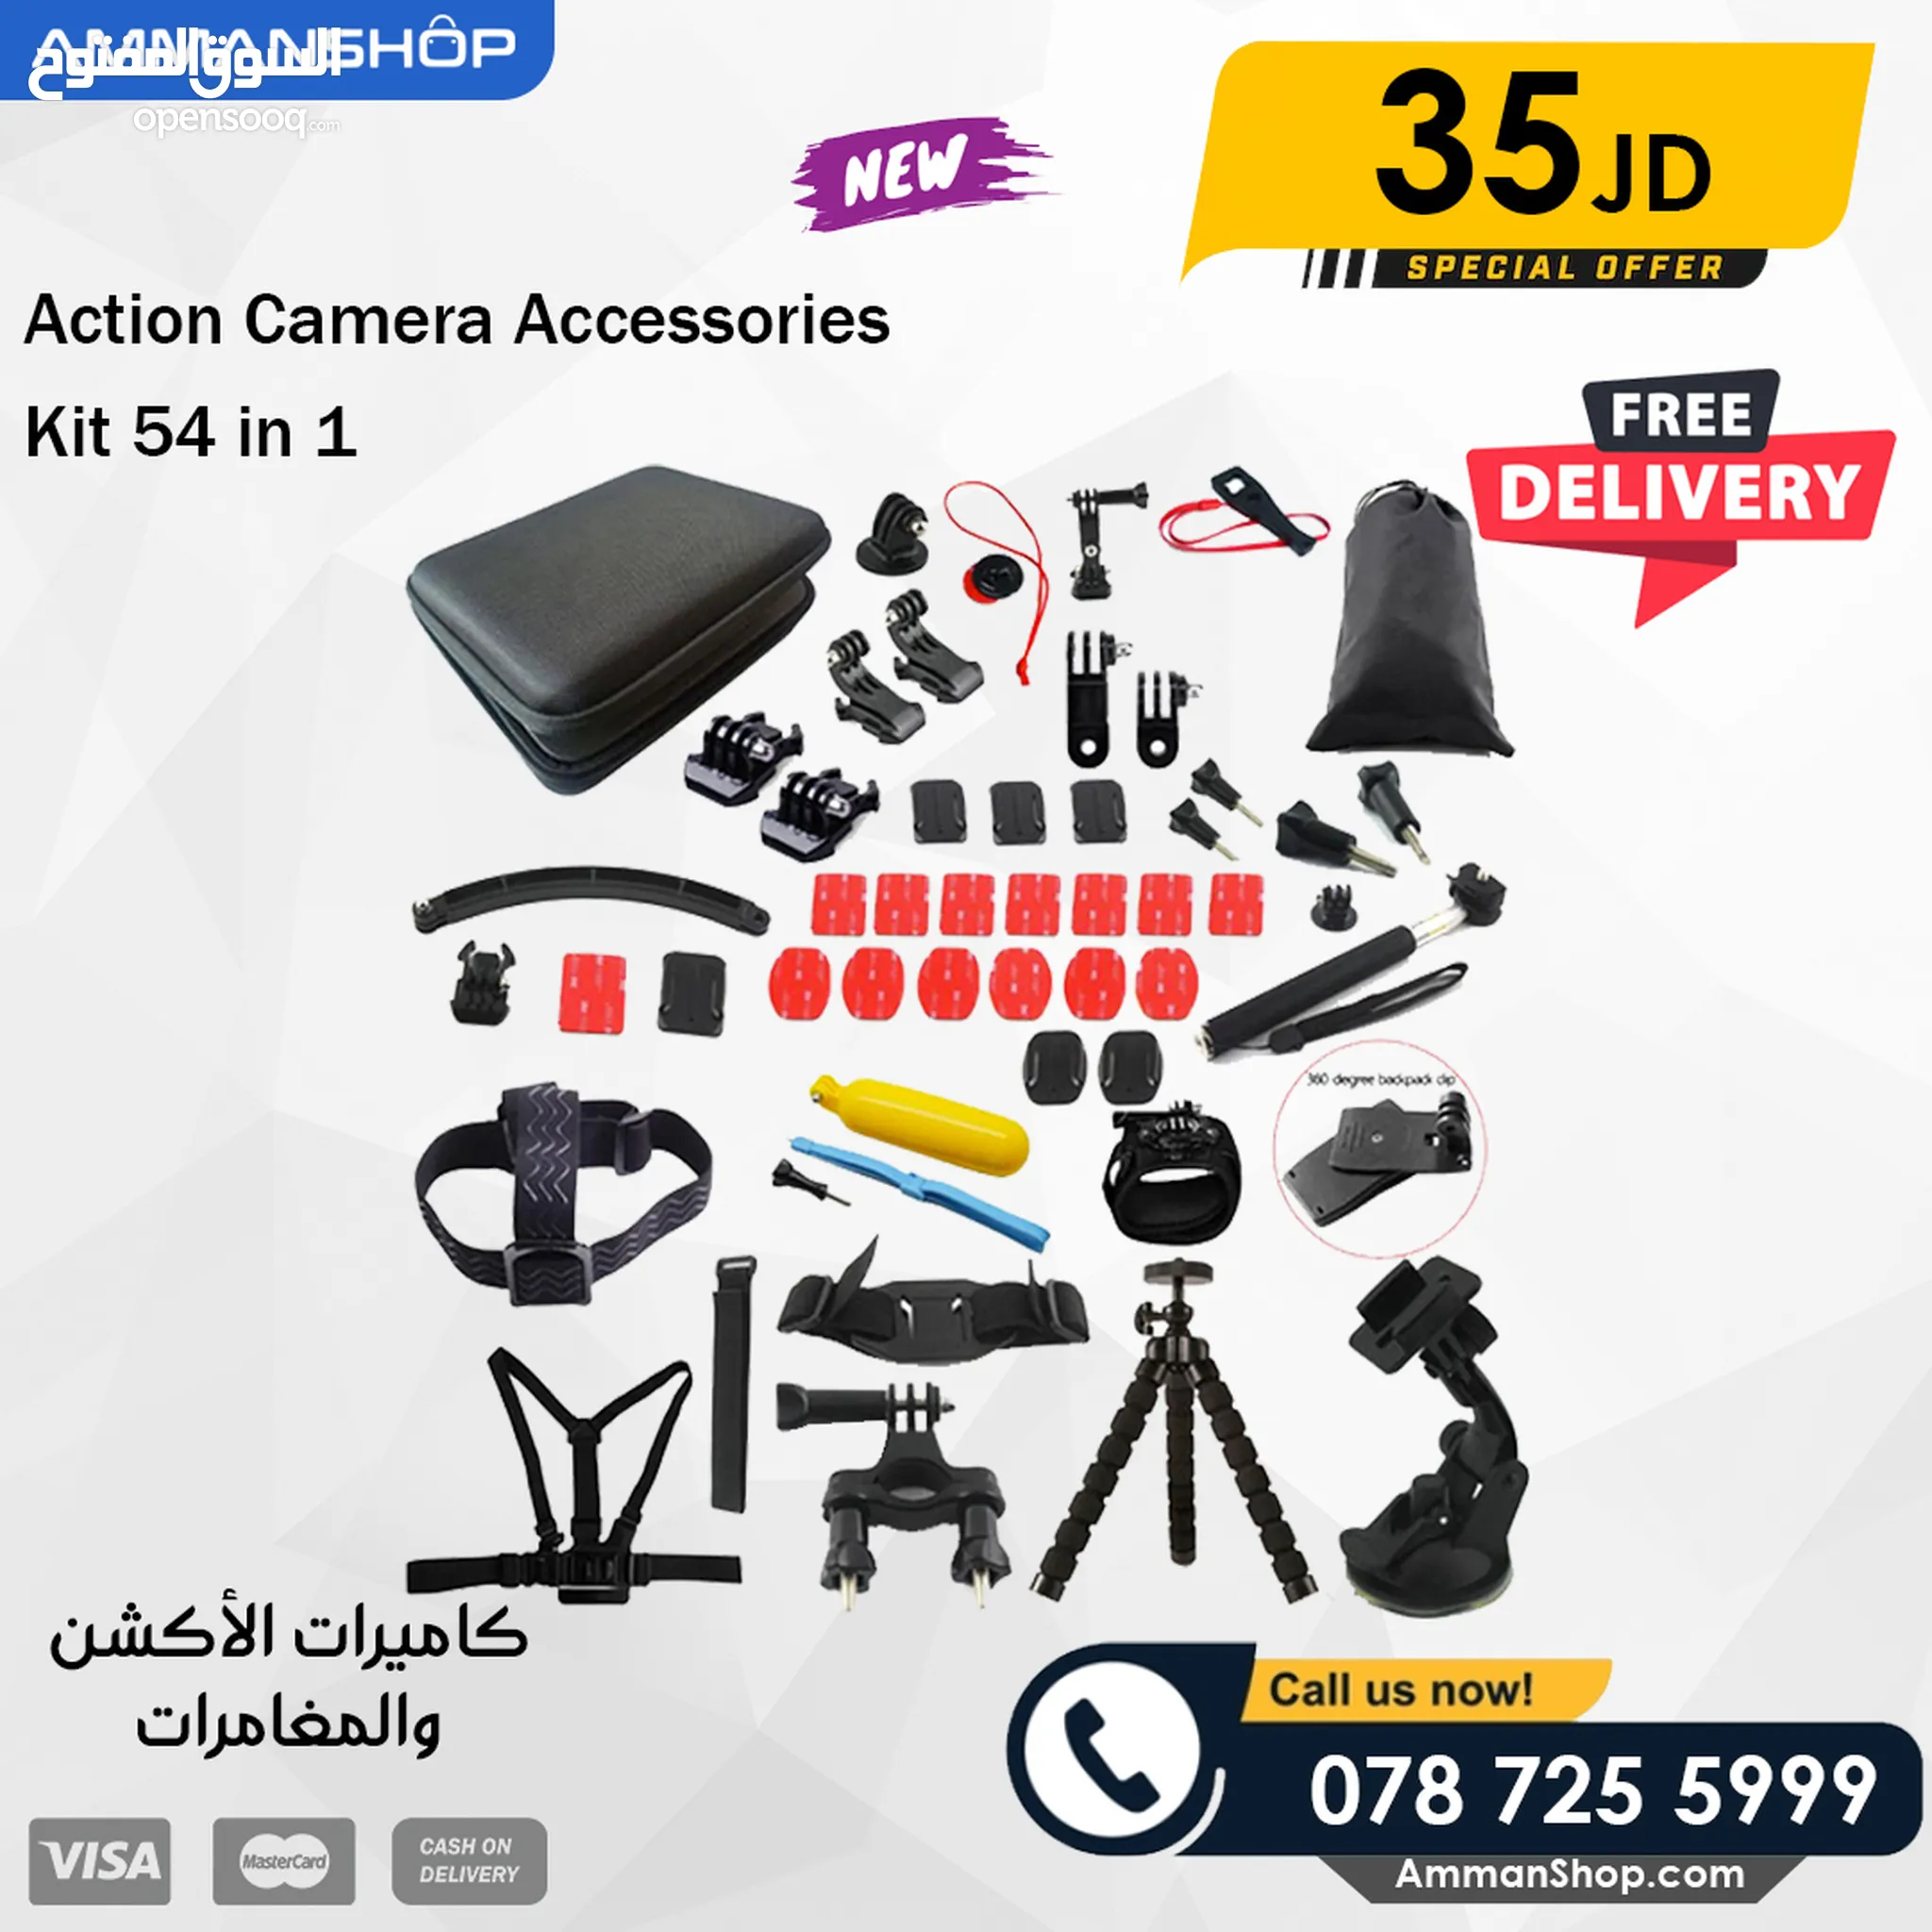 اكسسوارات ومعدات كاميرات وتصوير للبيع في الأردن